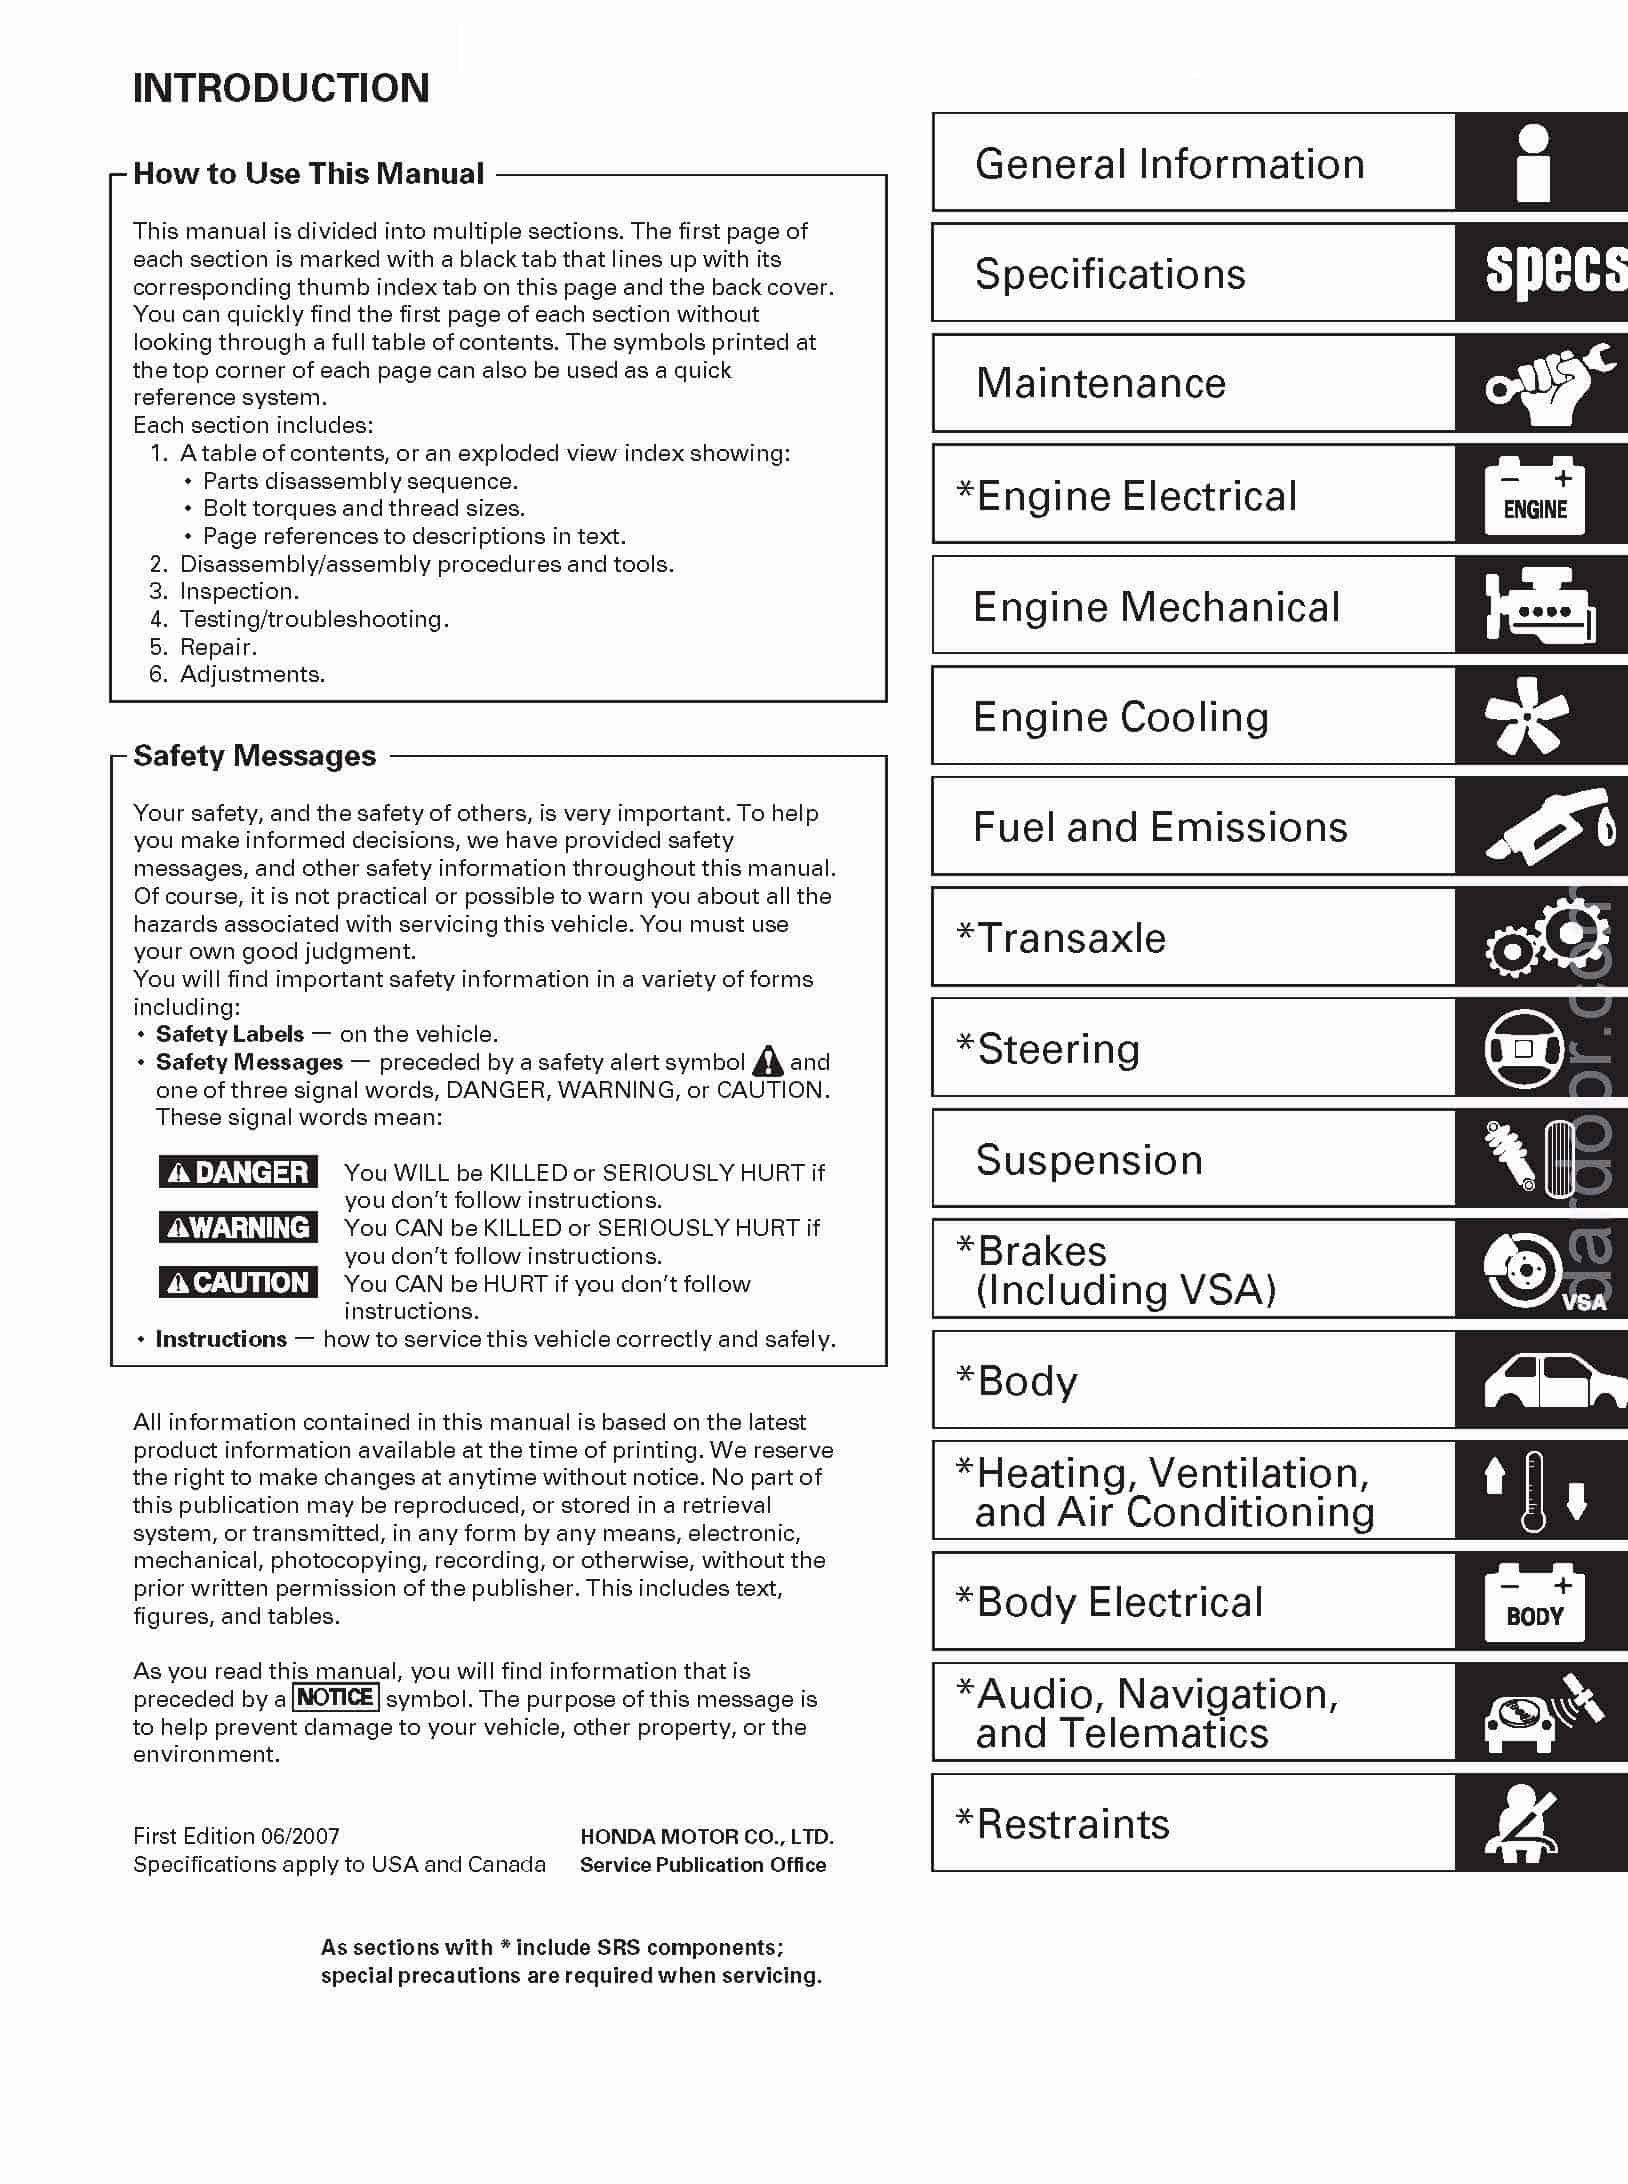 Contents 2008 Honda Ridgeline Repair Manual